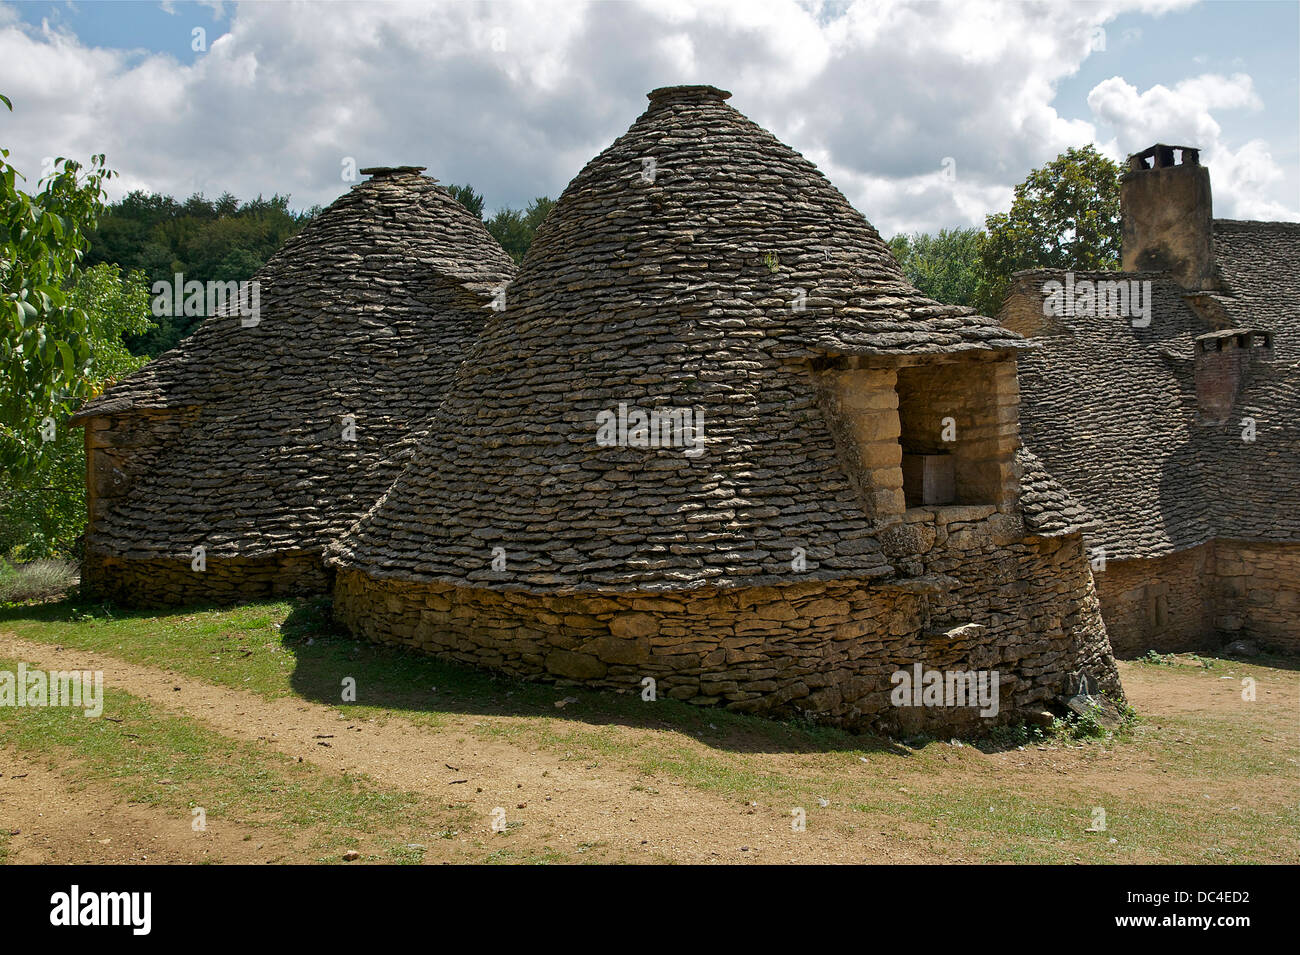 Cabanes du Breuil in Saint-André d'Allas, Dordogne, France. Stock Photo